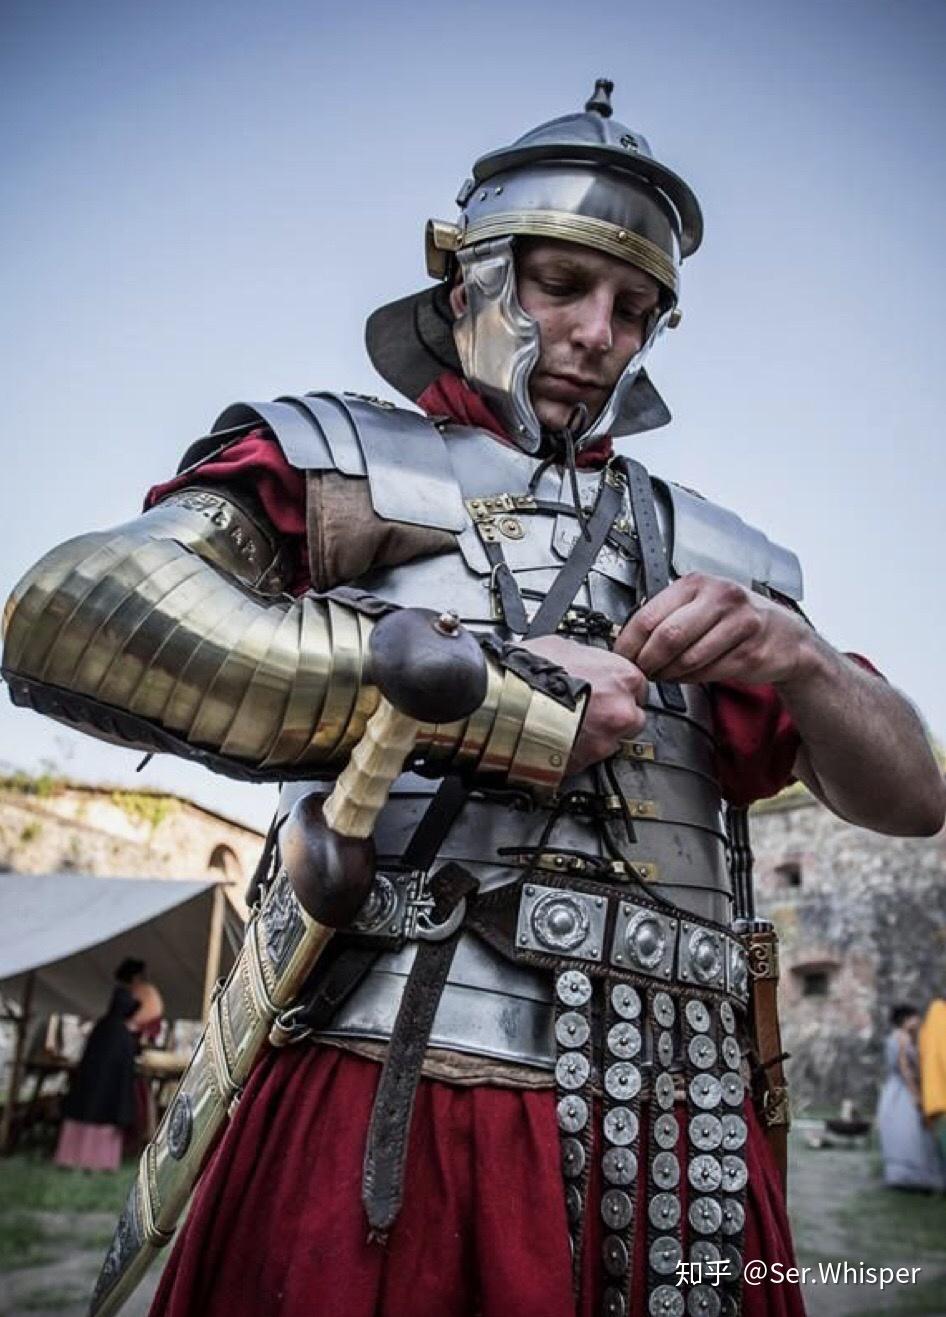 神圣罗马帝国盔甲图片